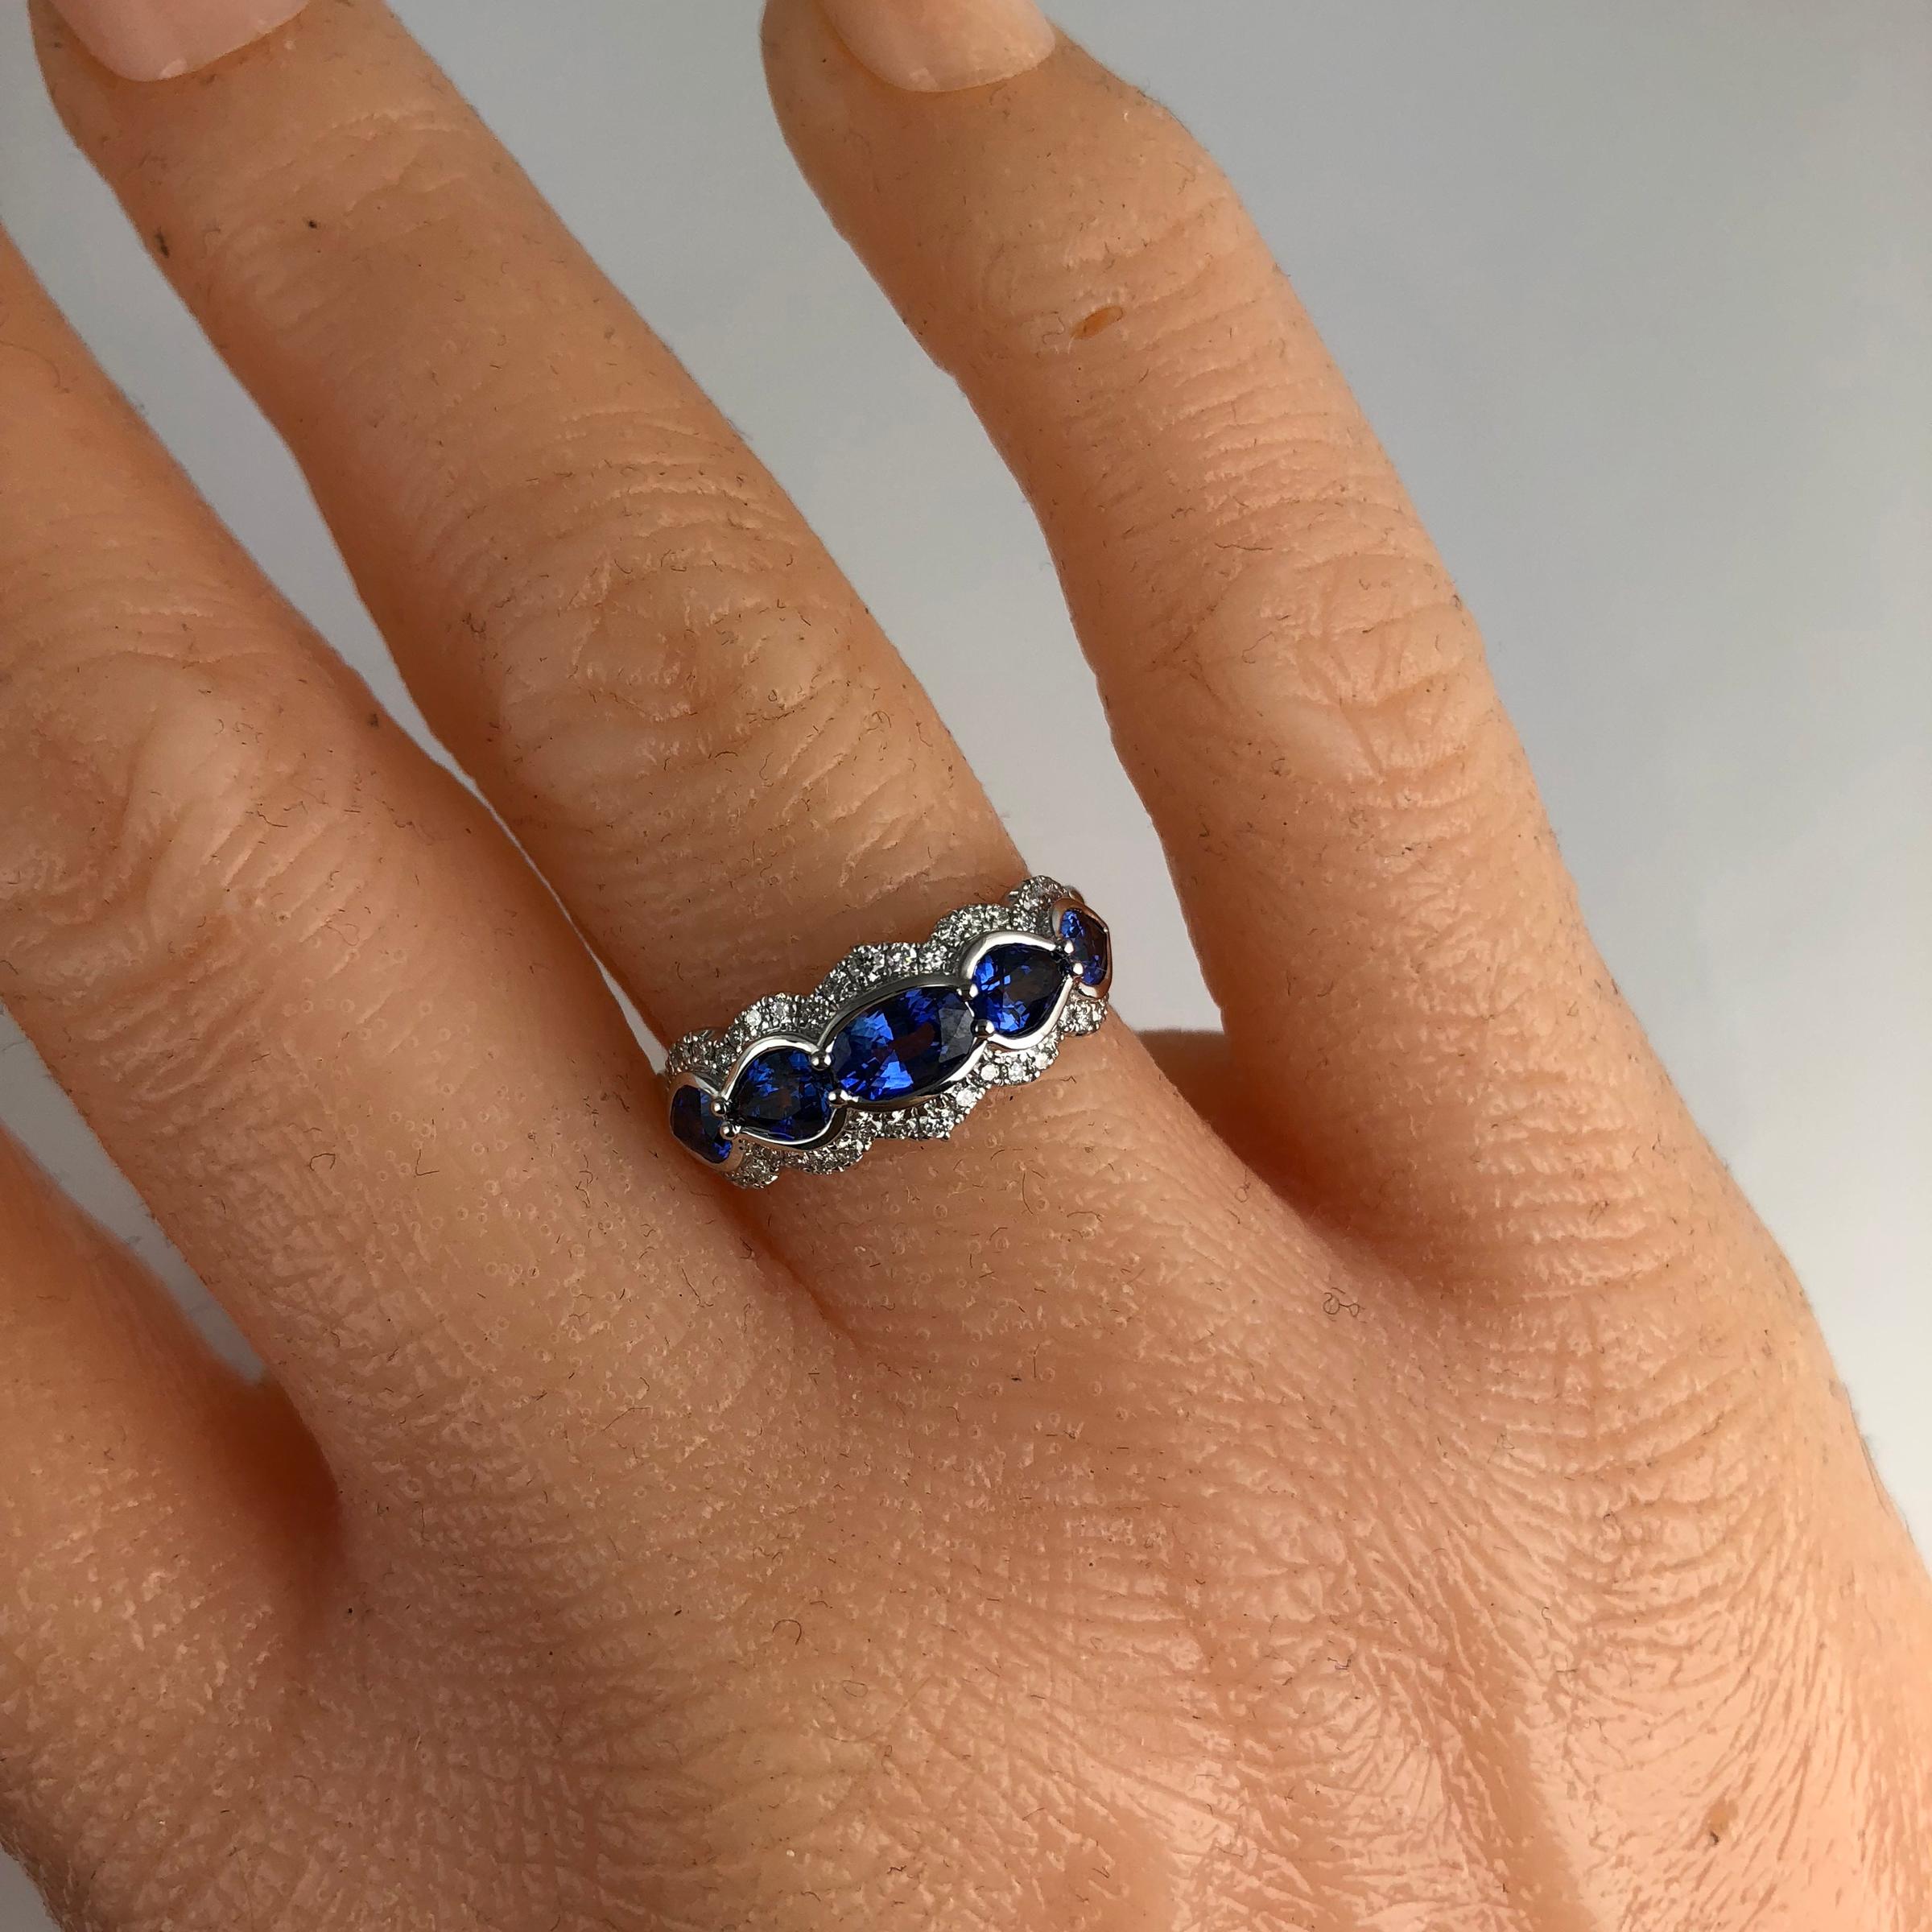 Contemporary DiamondTown 1.78 Carat Sapphire Ring with 0.29 Carat Diamond